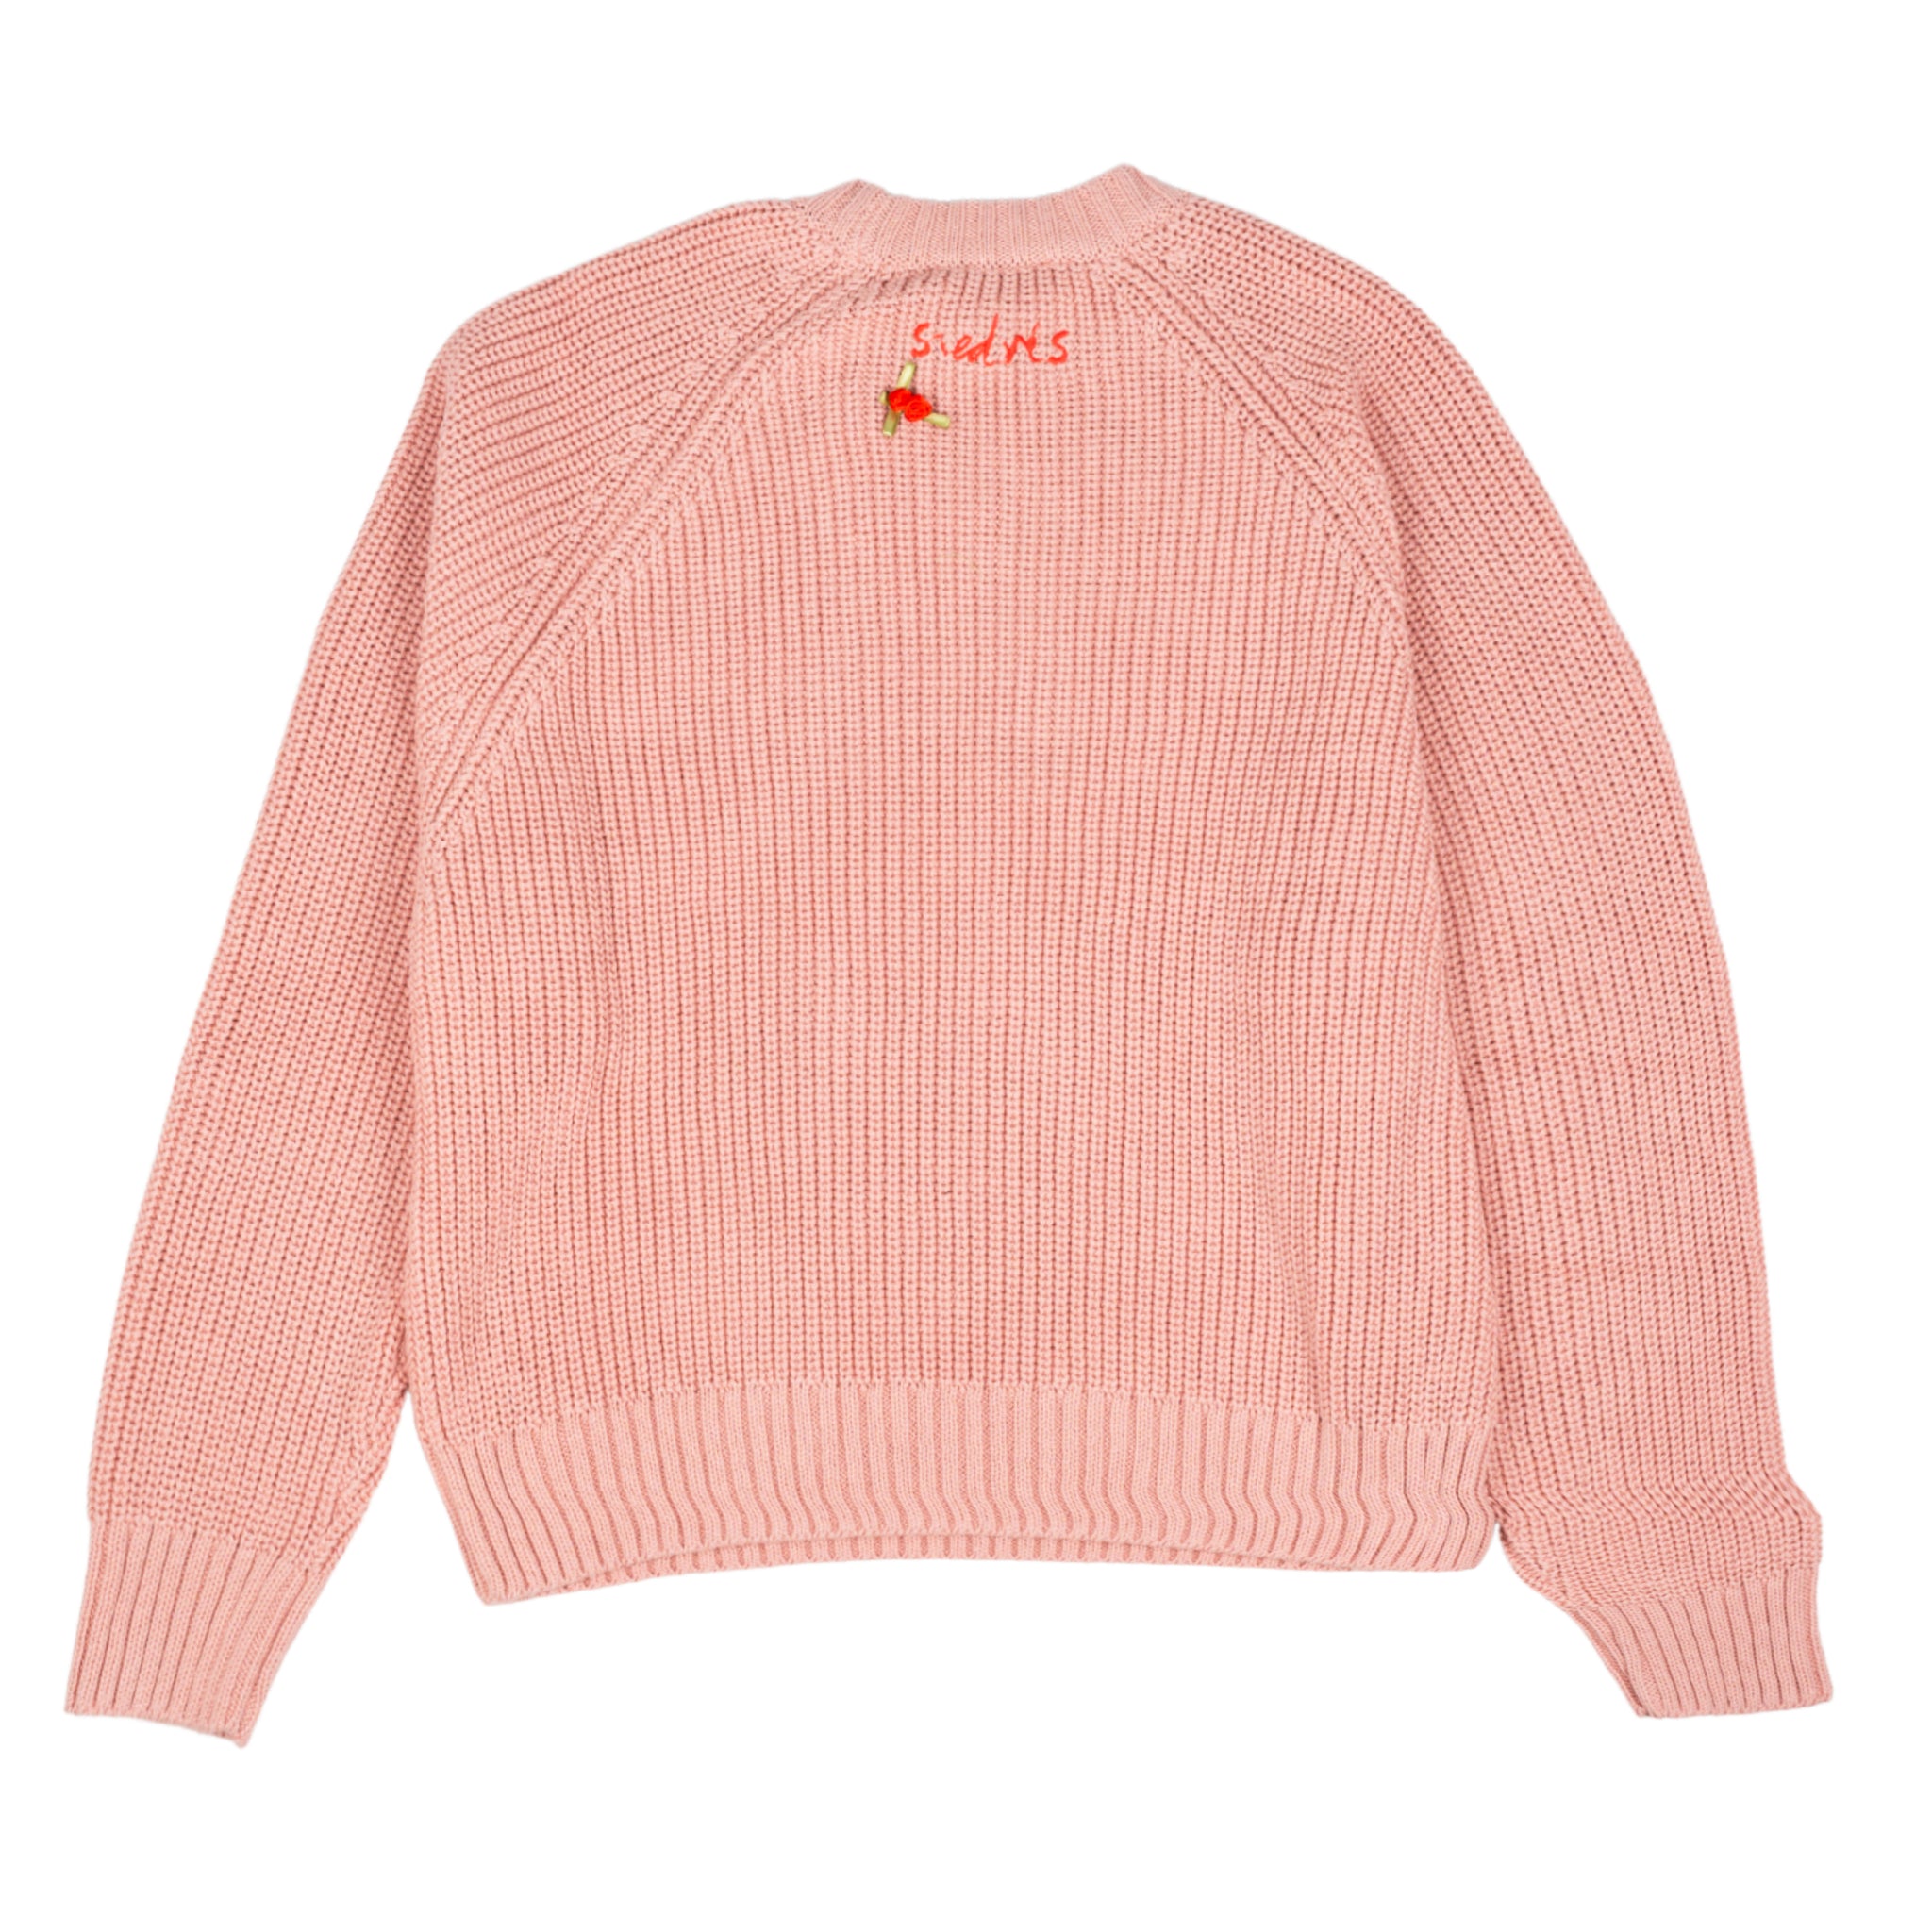 Duzy Crewneck Sweater in cotton